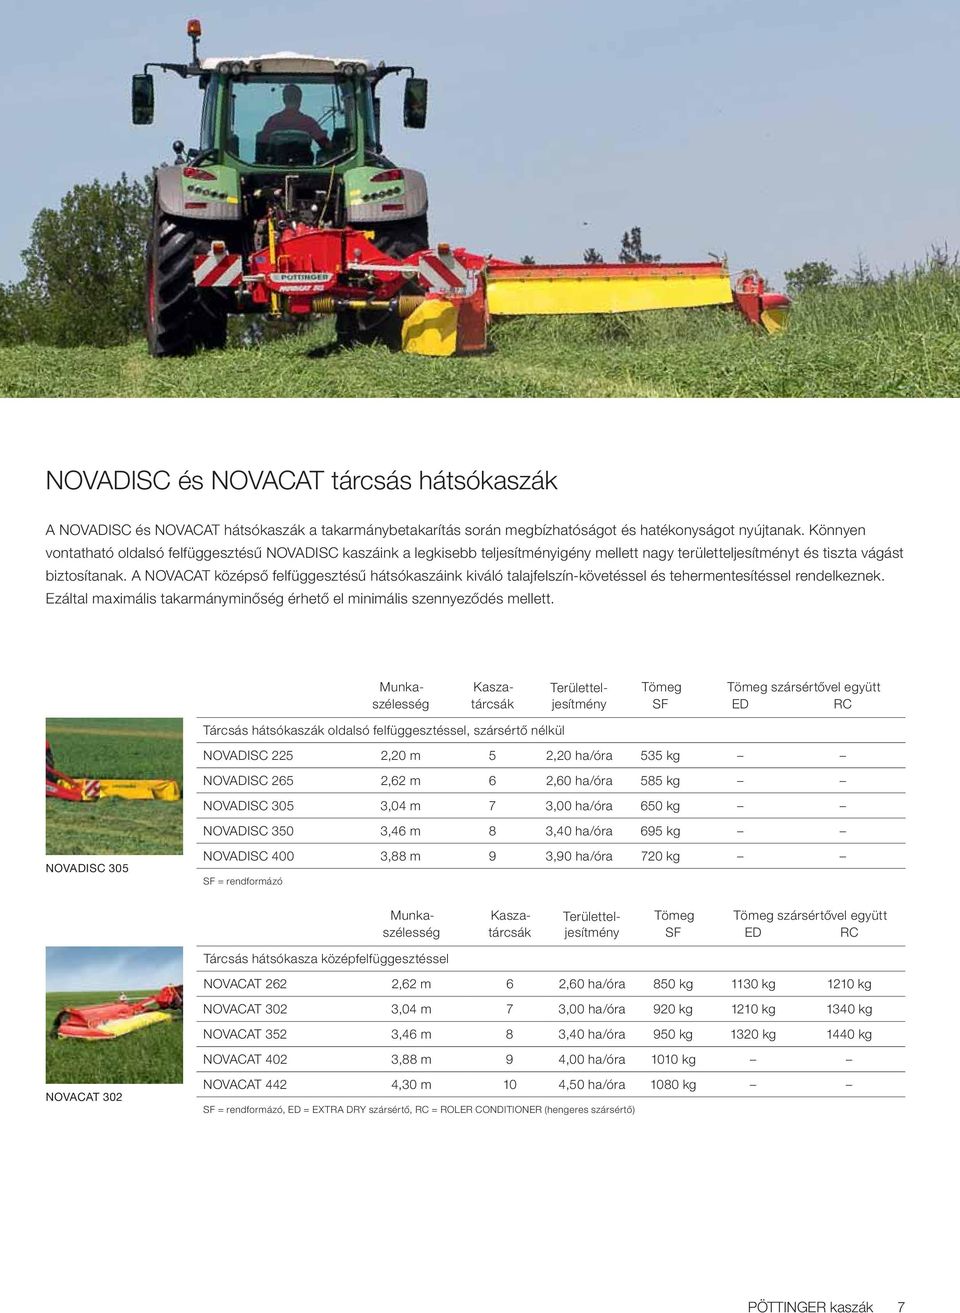 A NOVACAT középső felfüggesztésű hátsókaszáink kiváló talajfelszín-követéssel és tehermentesítéssel rendelkeznek. Ezáltal maximális takarmányminőség érhető el minimális szennyeződés mellett.